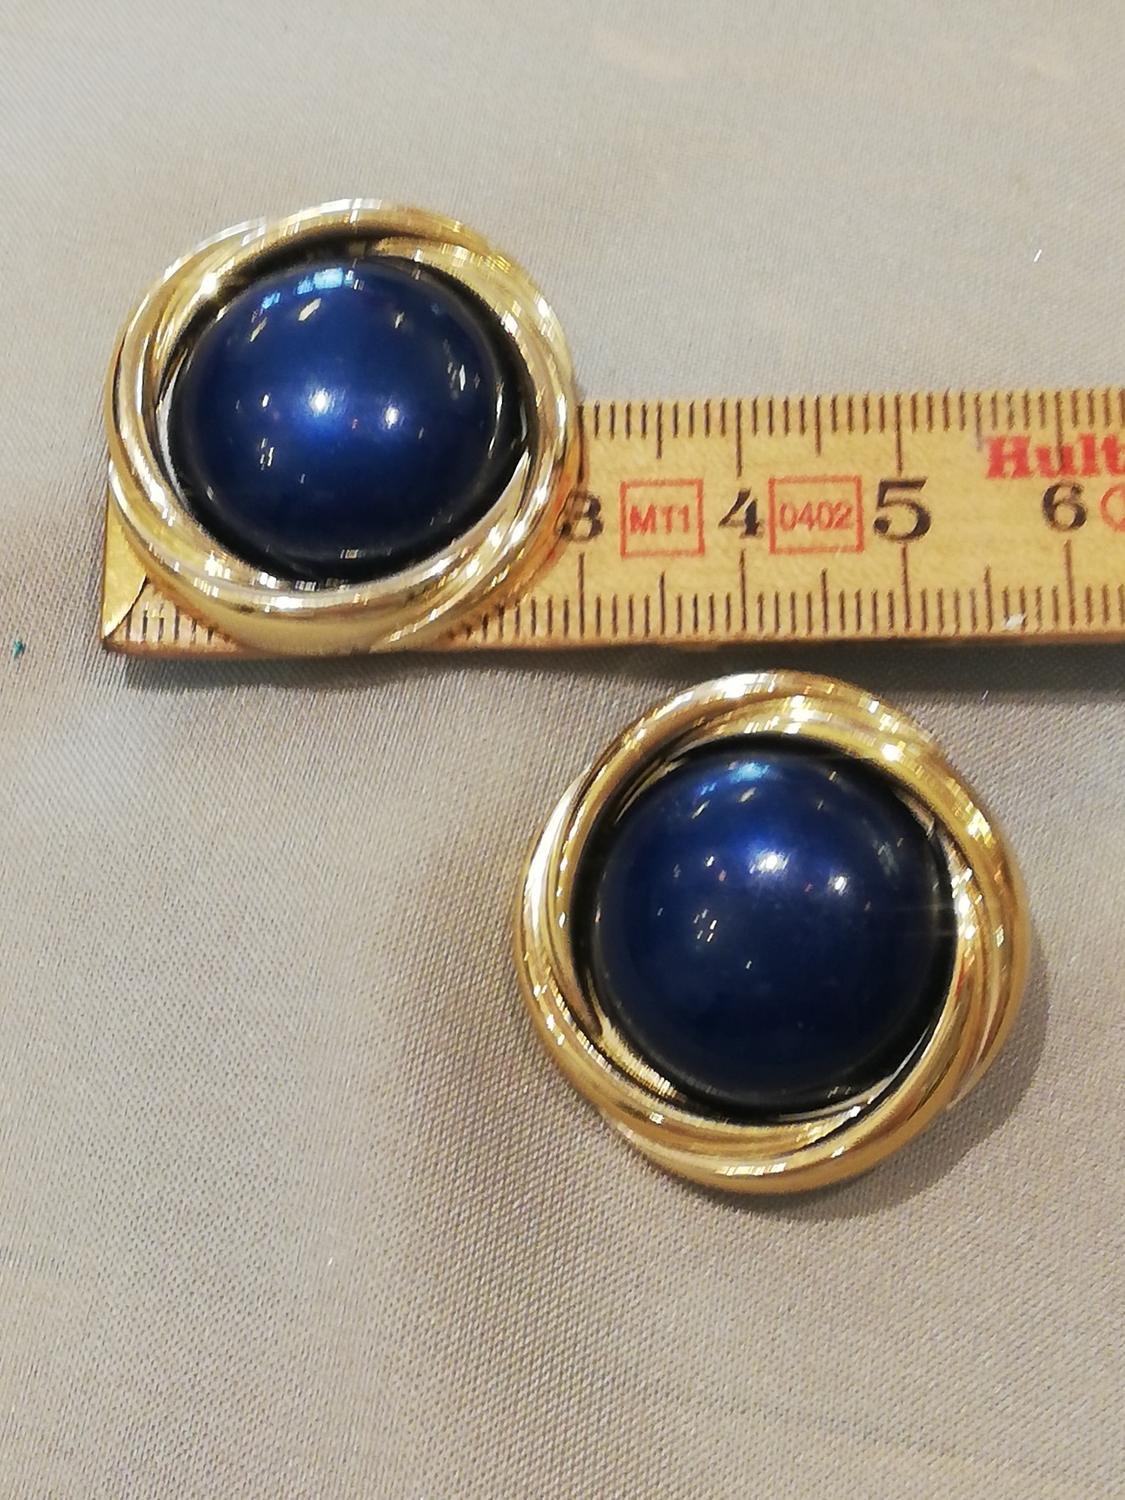 Vintage retro smycke bijouteri örhänge clips stora runda blå och guldfärgade